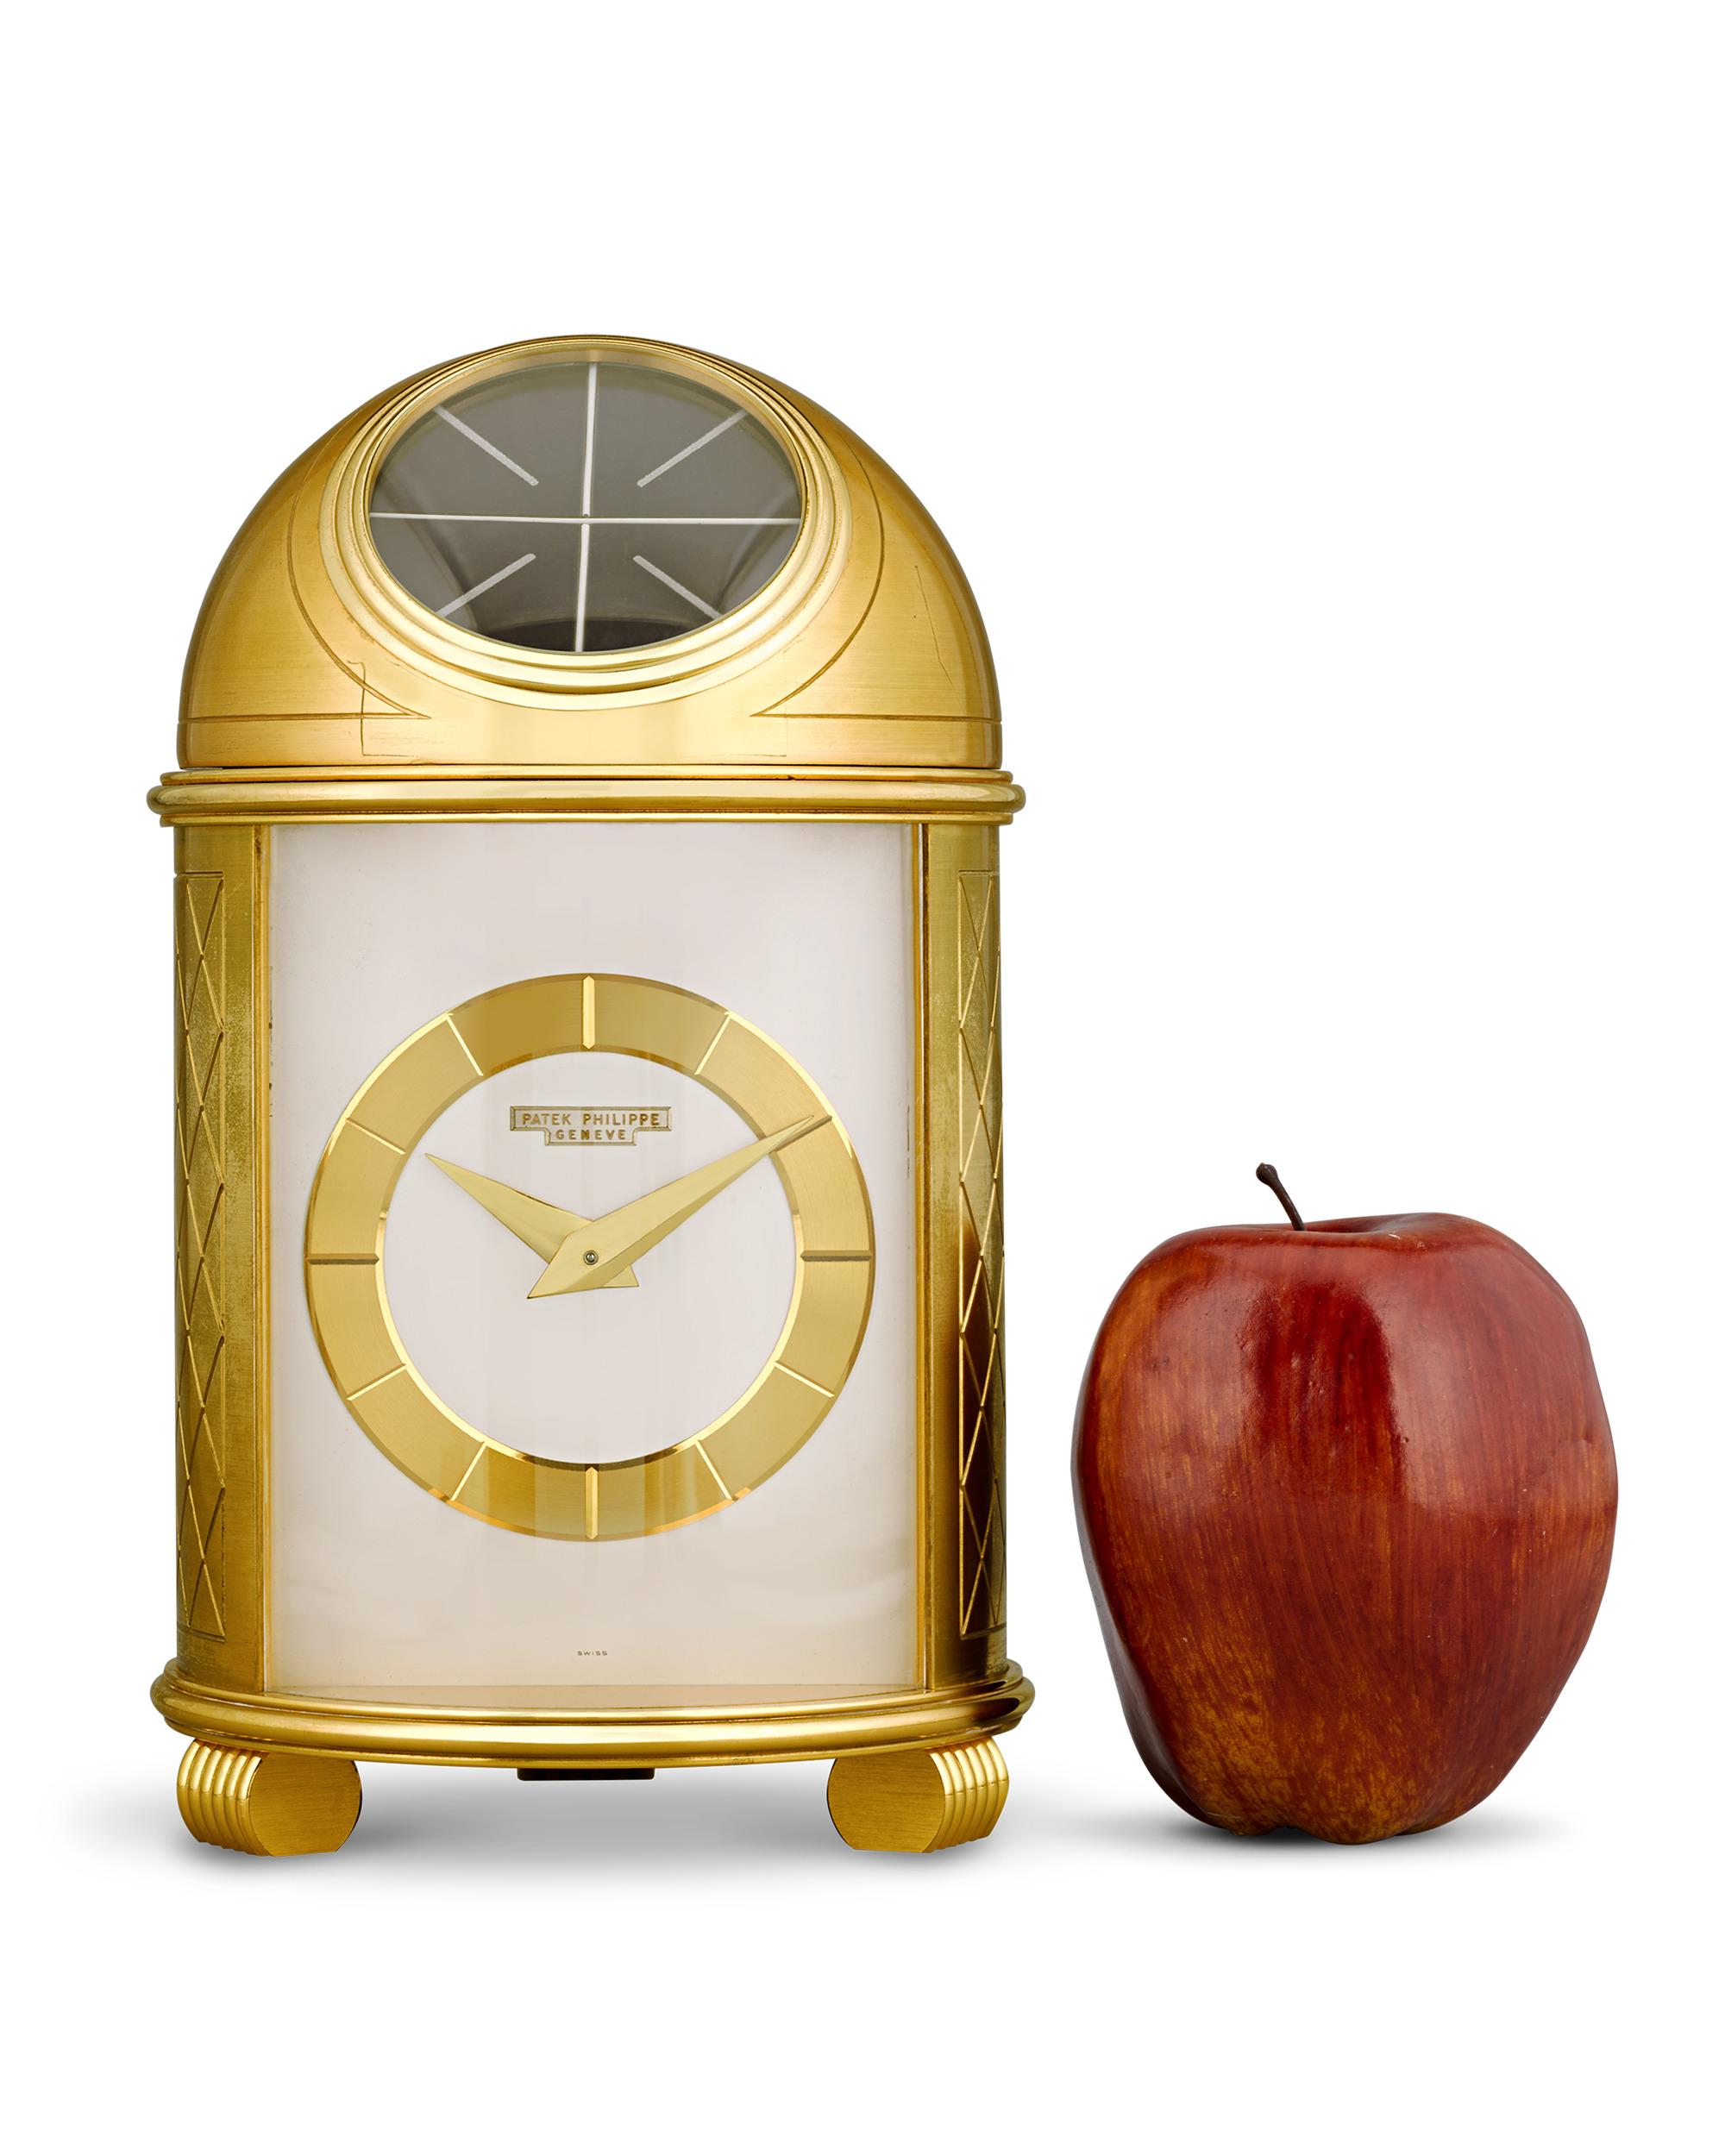 L'horloge à dôme fait partie des designs les plus emblématiques des premiers garde-temps solaires de Patek Philippe. Conçue pour la première fois en 1956, cette horloge a été fabriquée en 1957 selon les documents d'archives qui l'accompagnent, ce